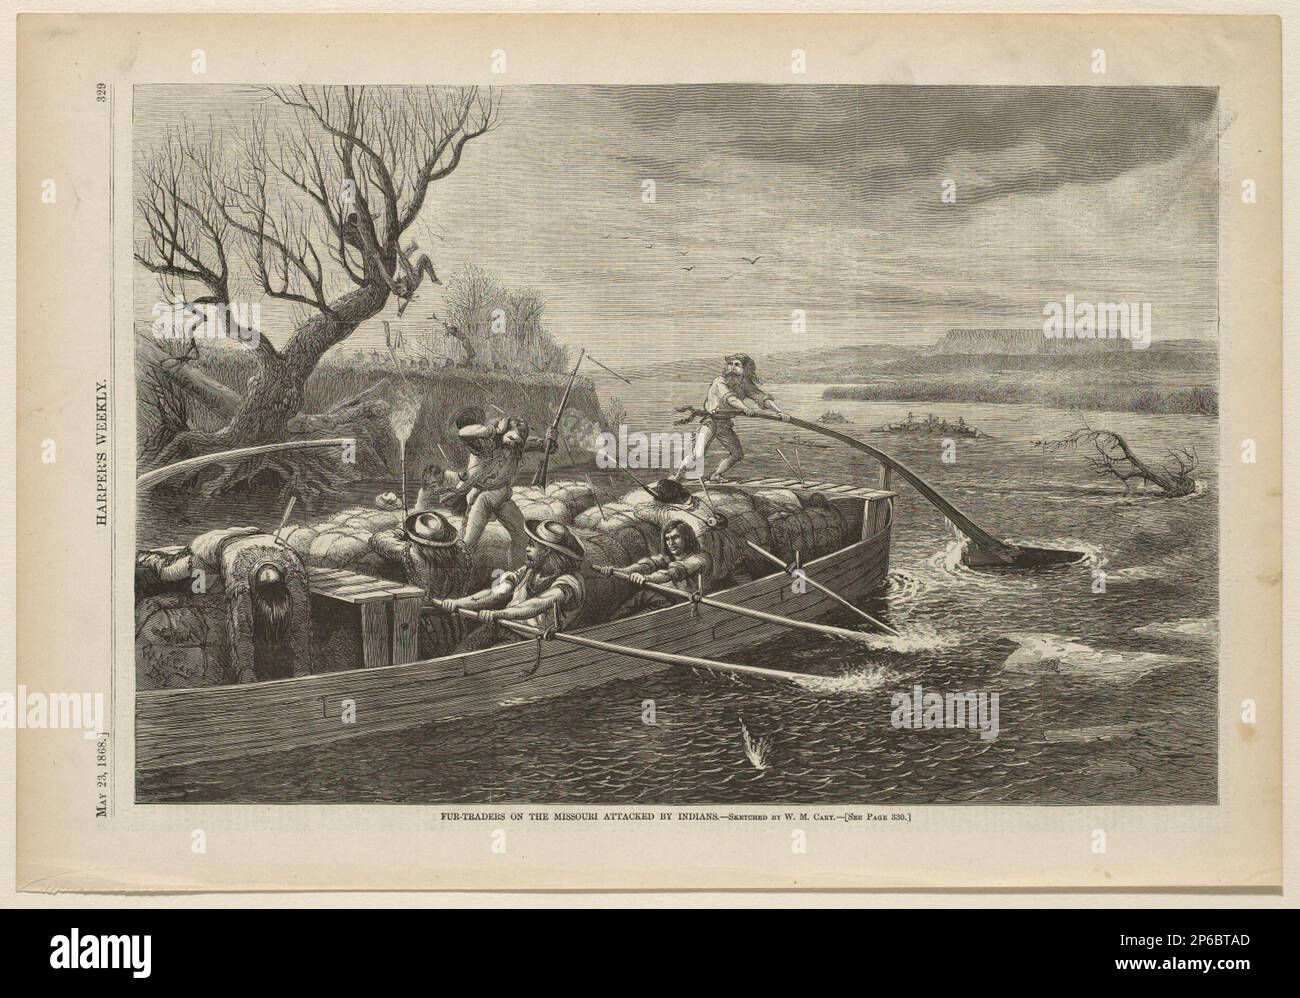 William de la Montagne Cary, Fur-Traders sul Missouri attaccato dagli indiani, 1868, incisione del legno su carta. Foto Stock